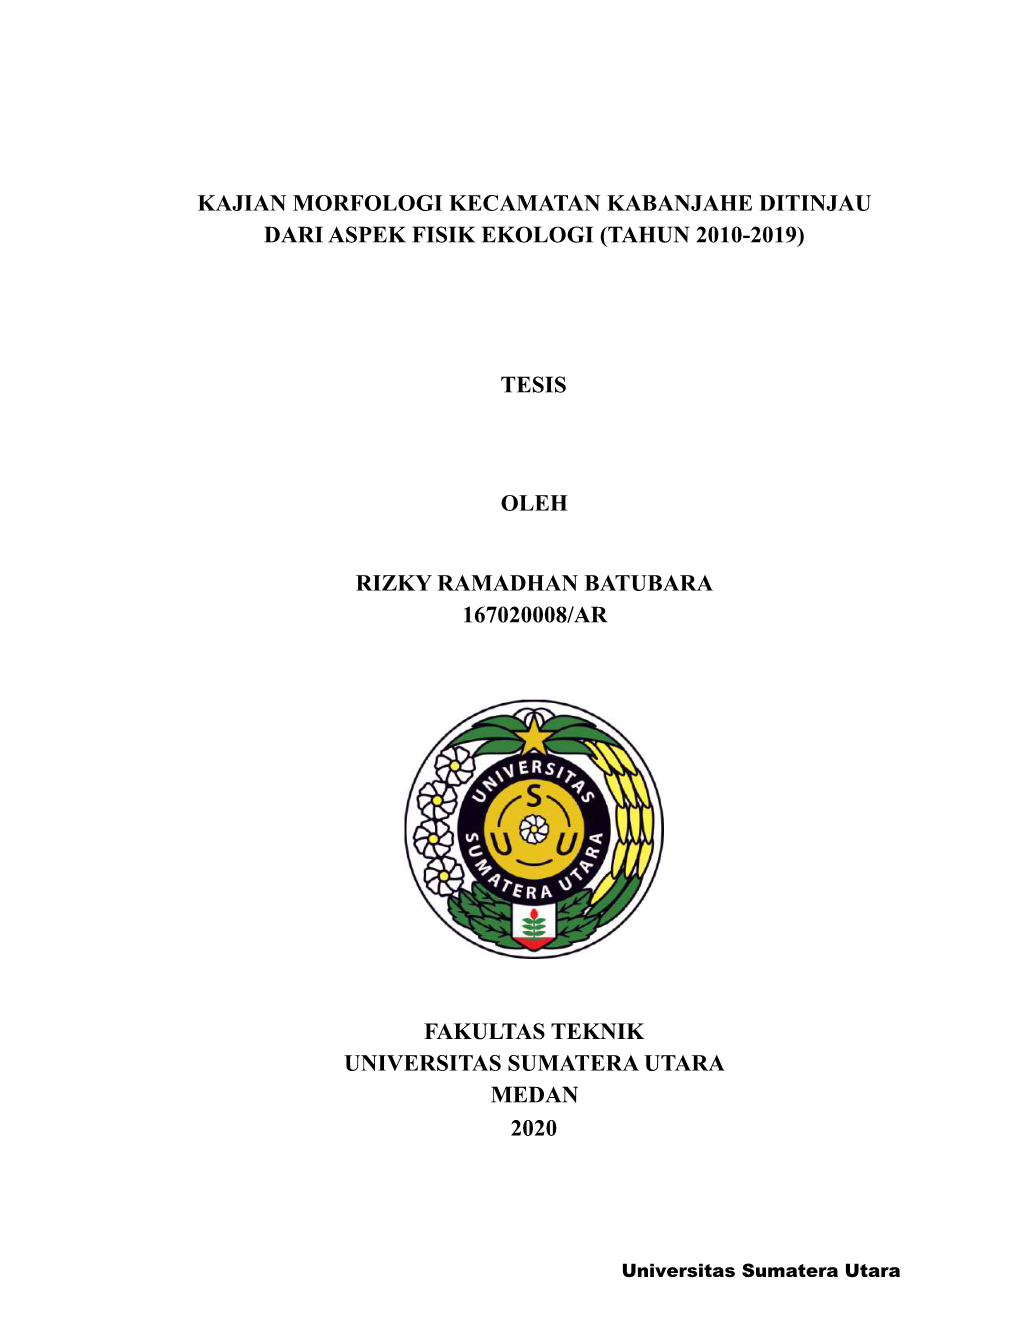 Kajian Morfologi Kecamatan Kabanjahe Ditinjau Dari Aspek Fisik Ekologi (Tahun 2010-2019)